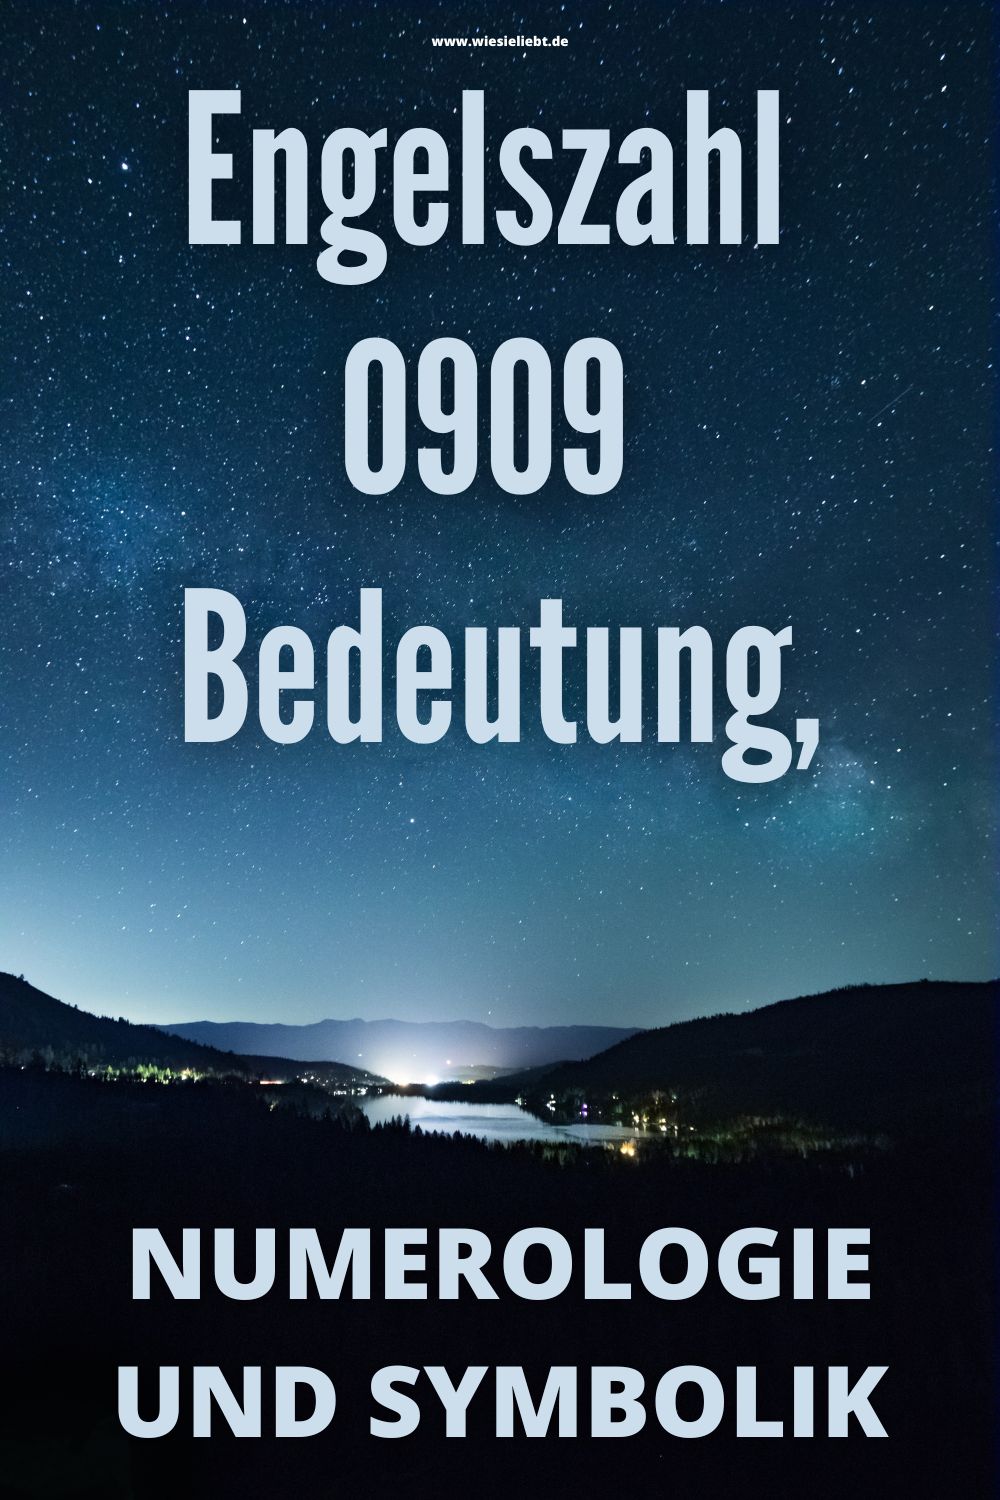 Engelszahl-0909-Bedeutung-Numerologie-und-Symbolik